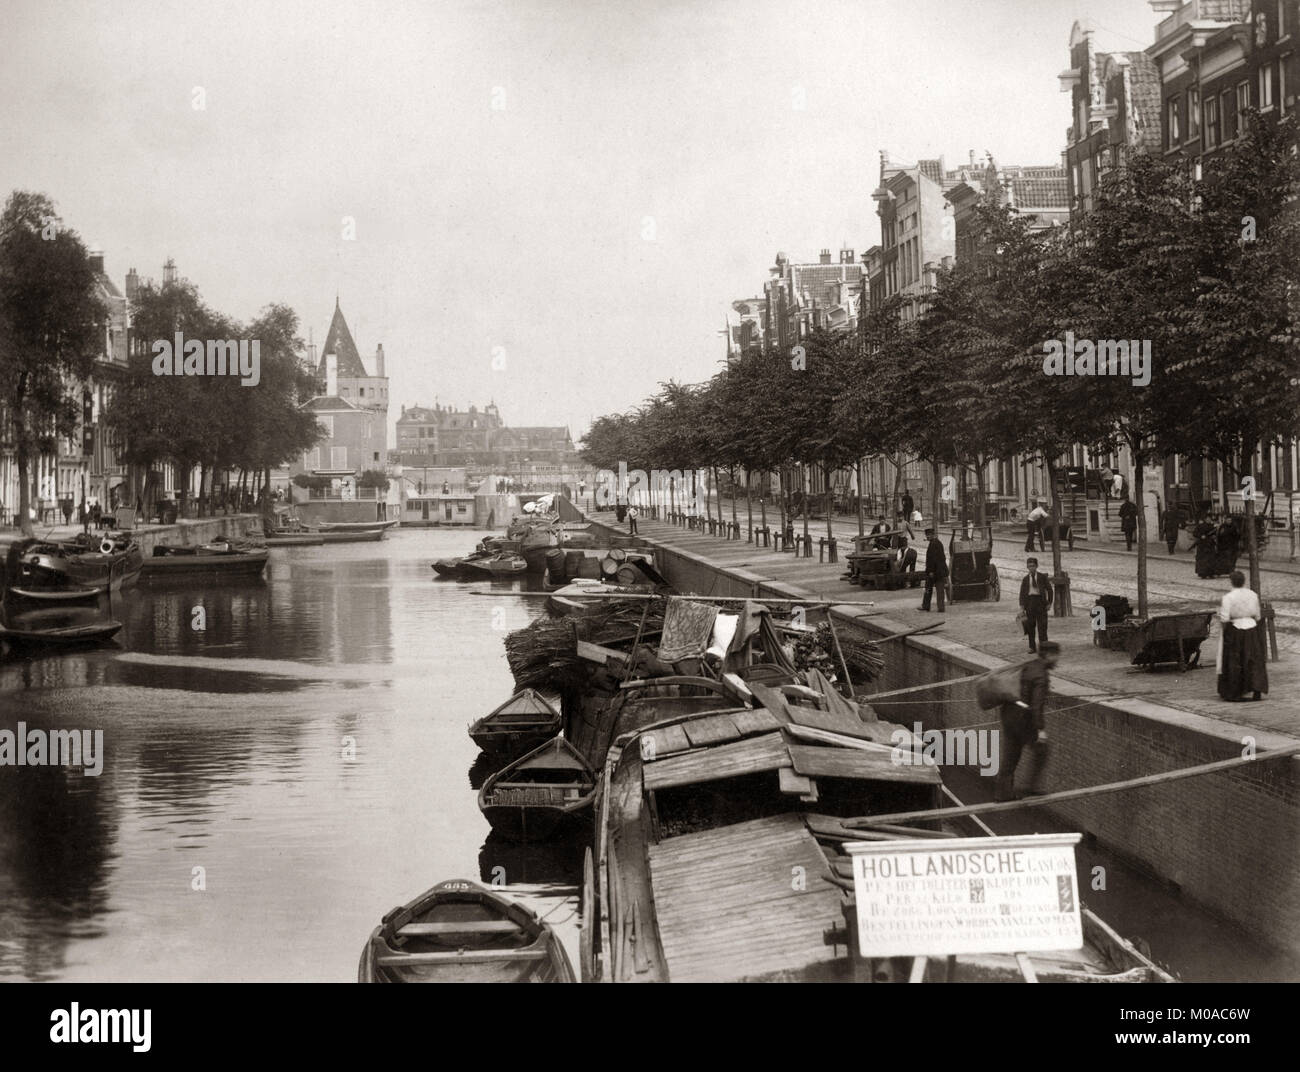 Scène du canal avec des bateaux, les Pays Bas, Hollande, 1890 Banque D'Images